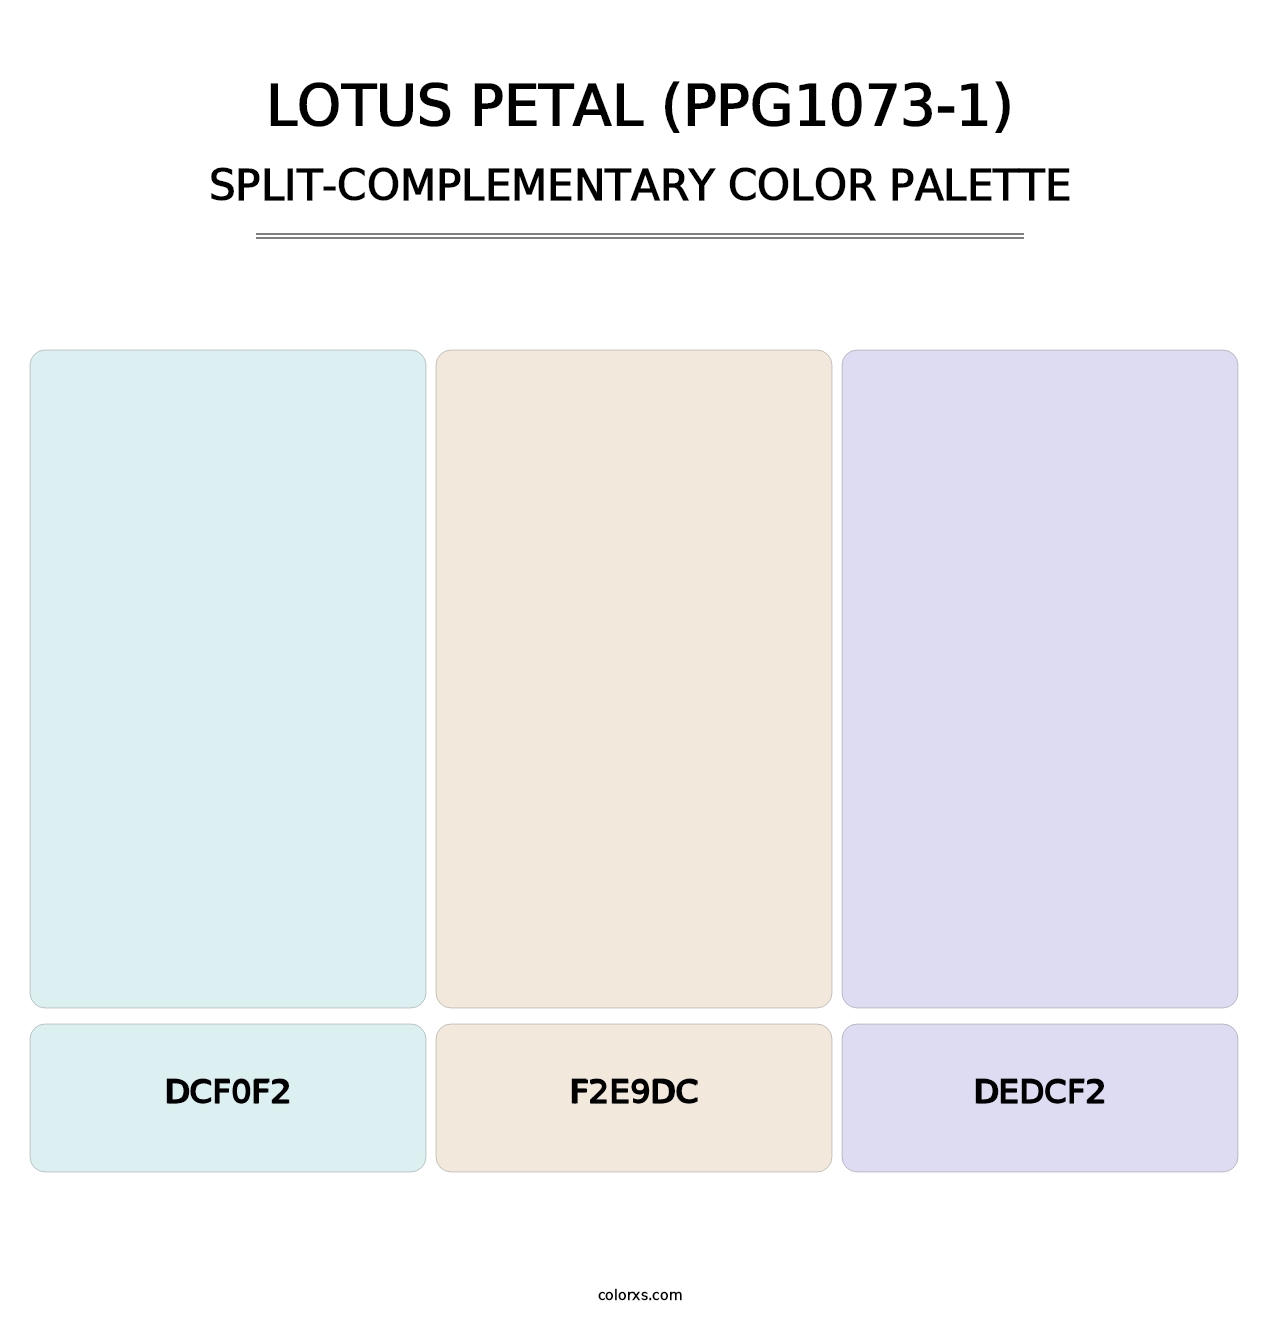 Lotus Petal (PPG1073-1) - Split-Complementary Color Palette